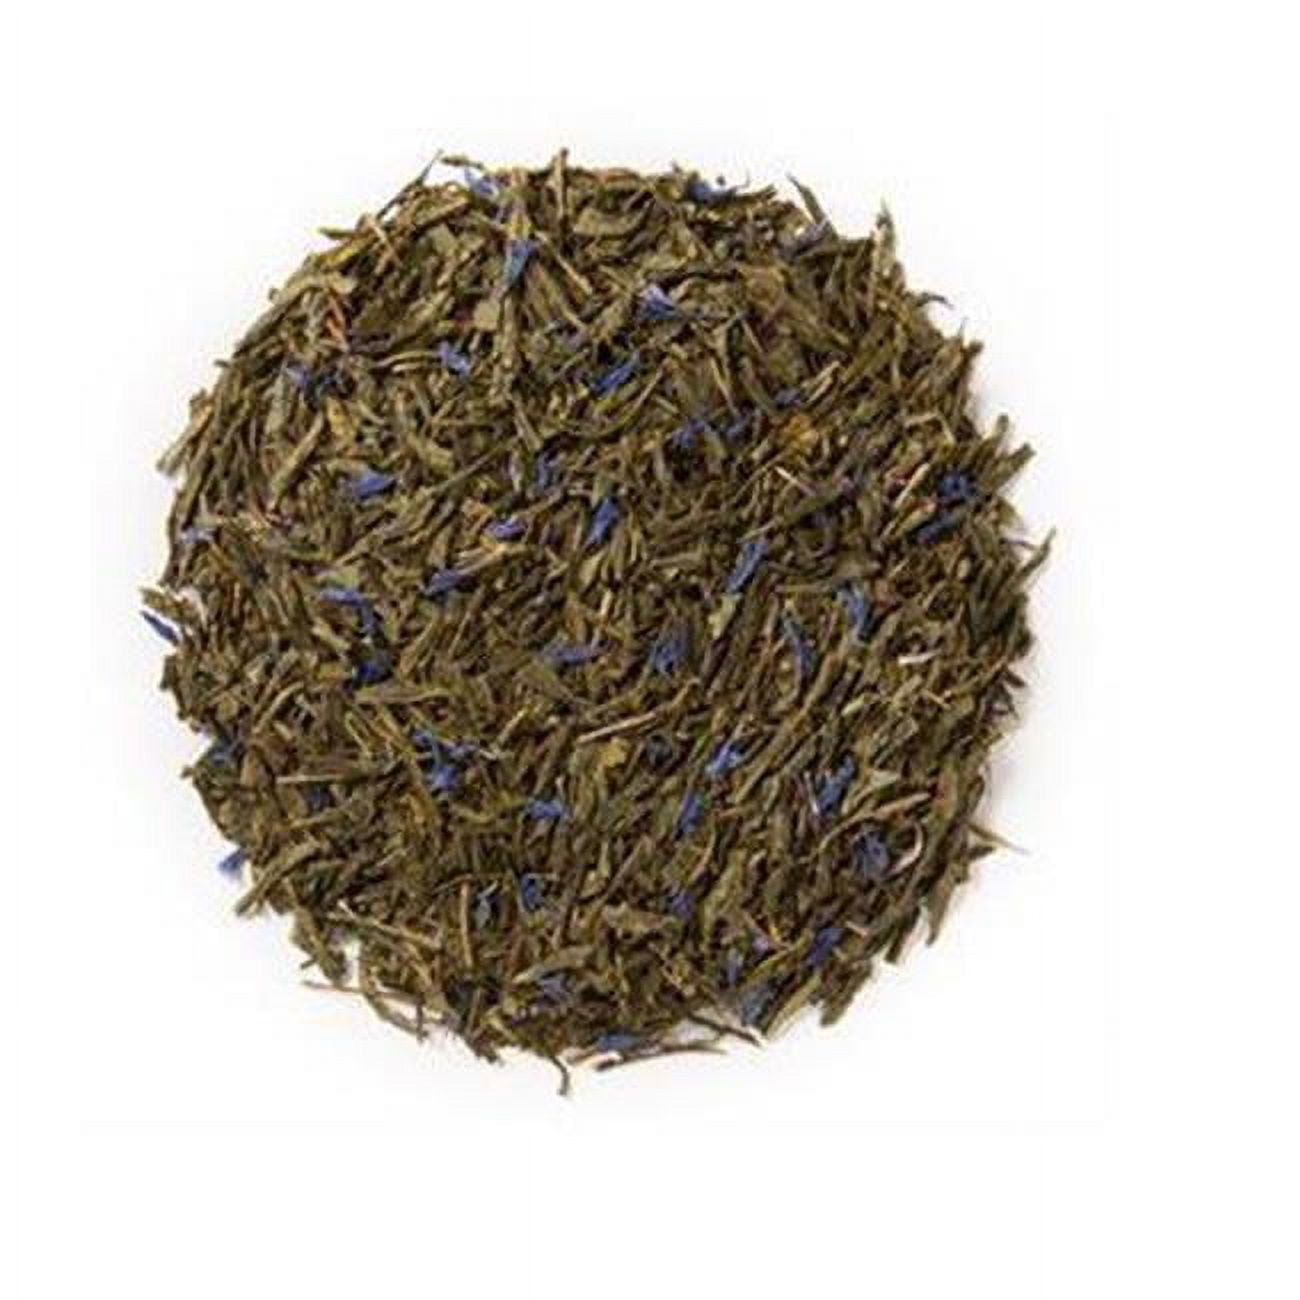 Picture of Davidsons Organics 7333 2 oz Green Leaves Blue Sky Sampler Tea - Pack of 6